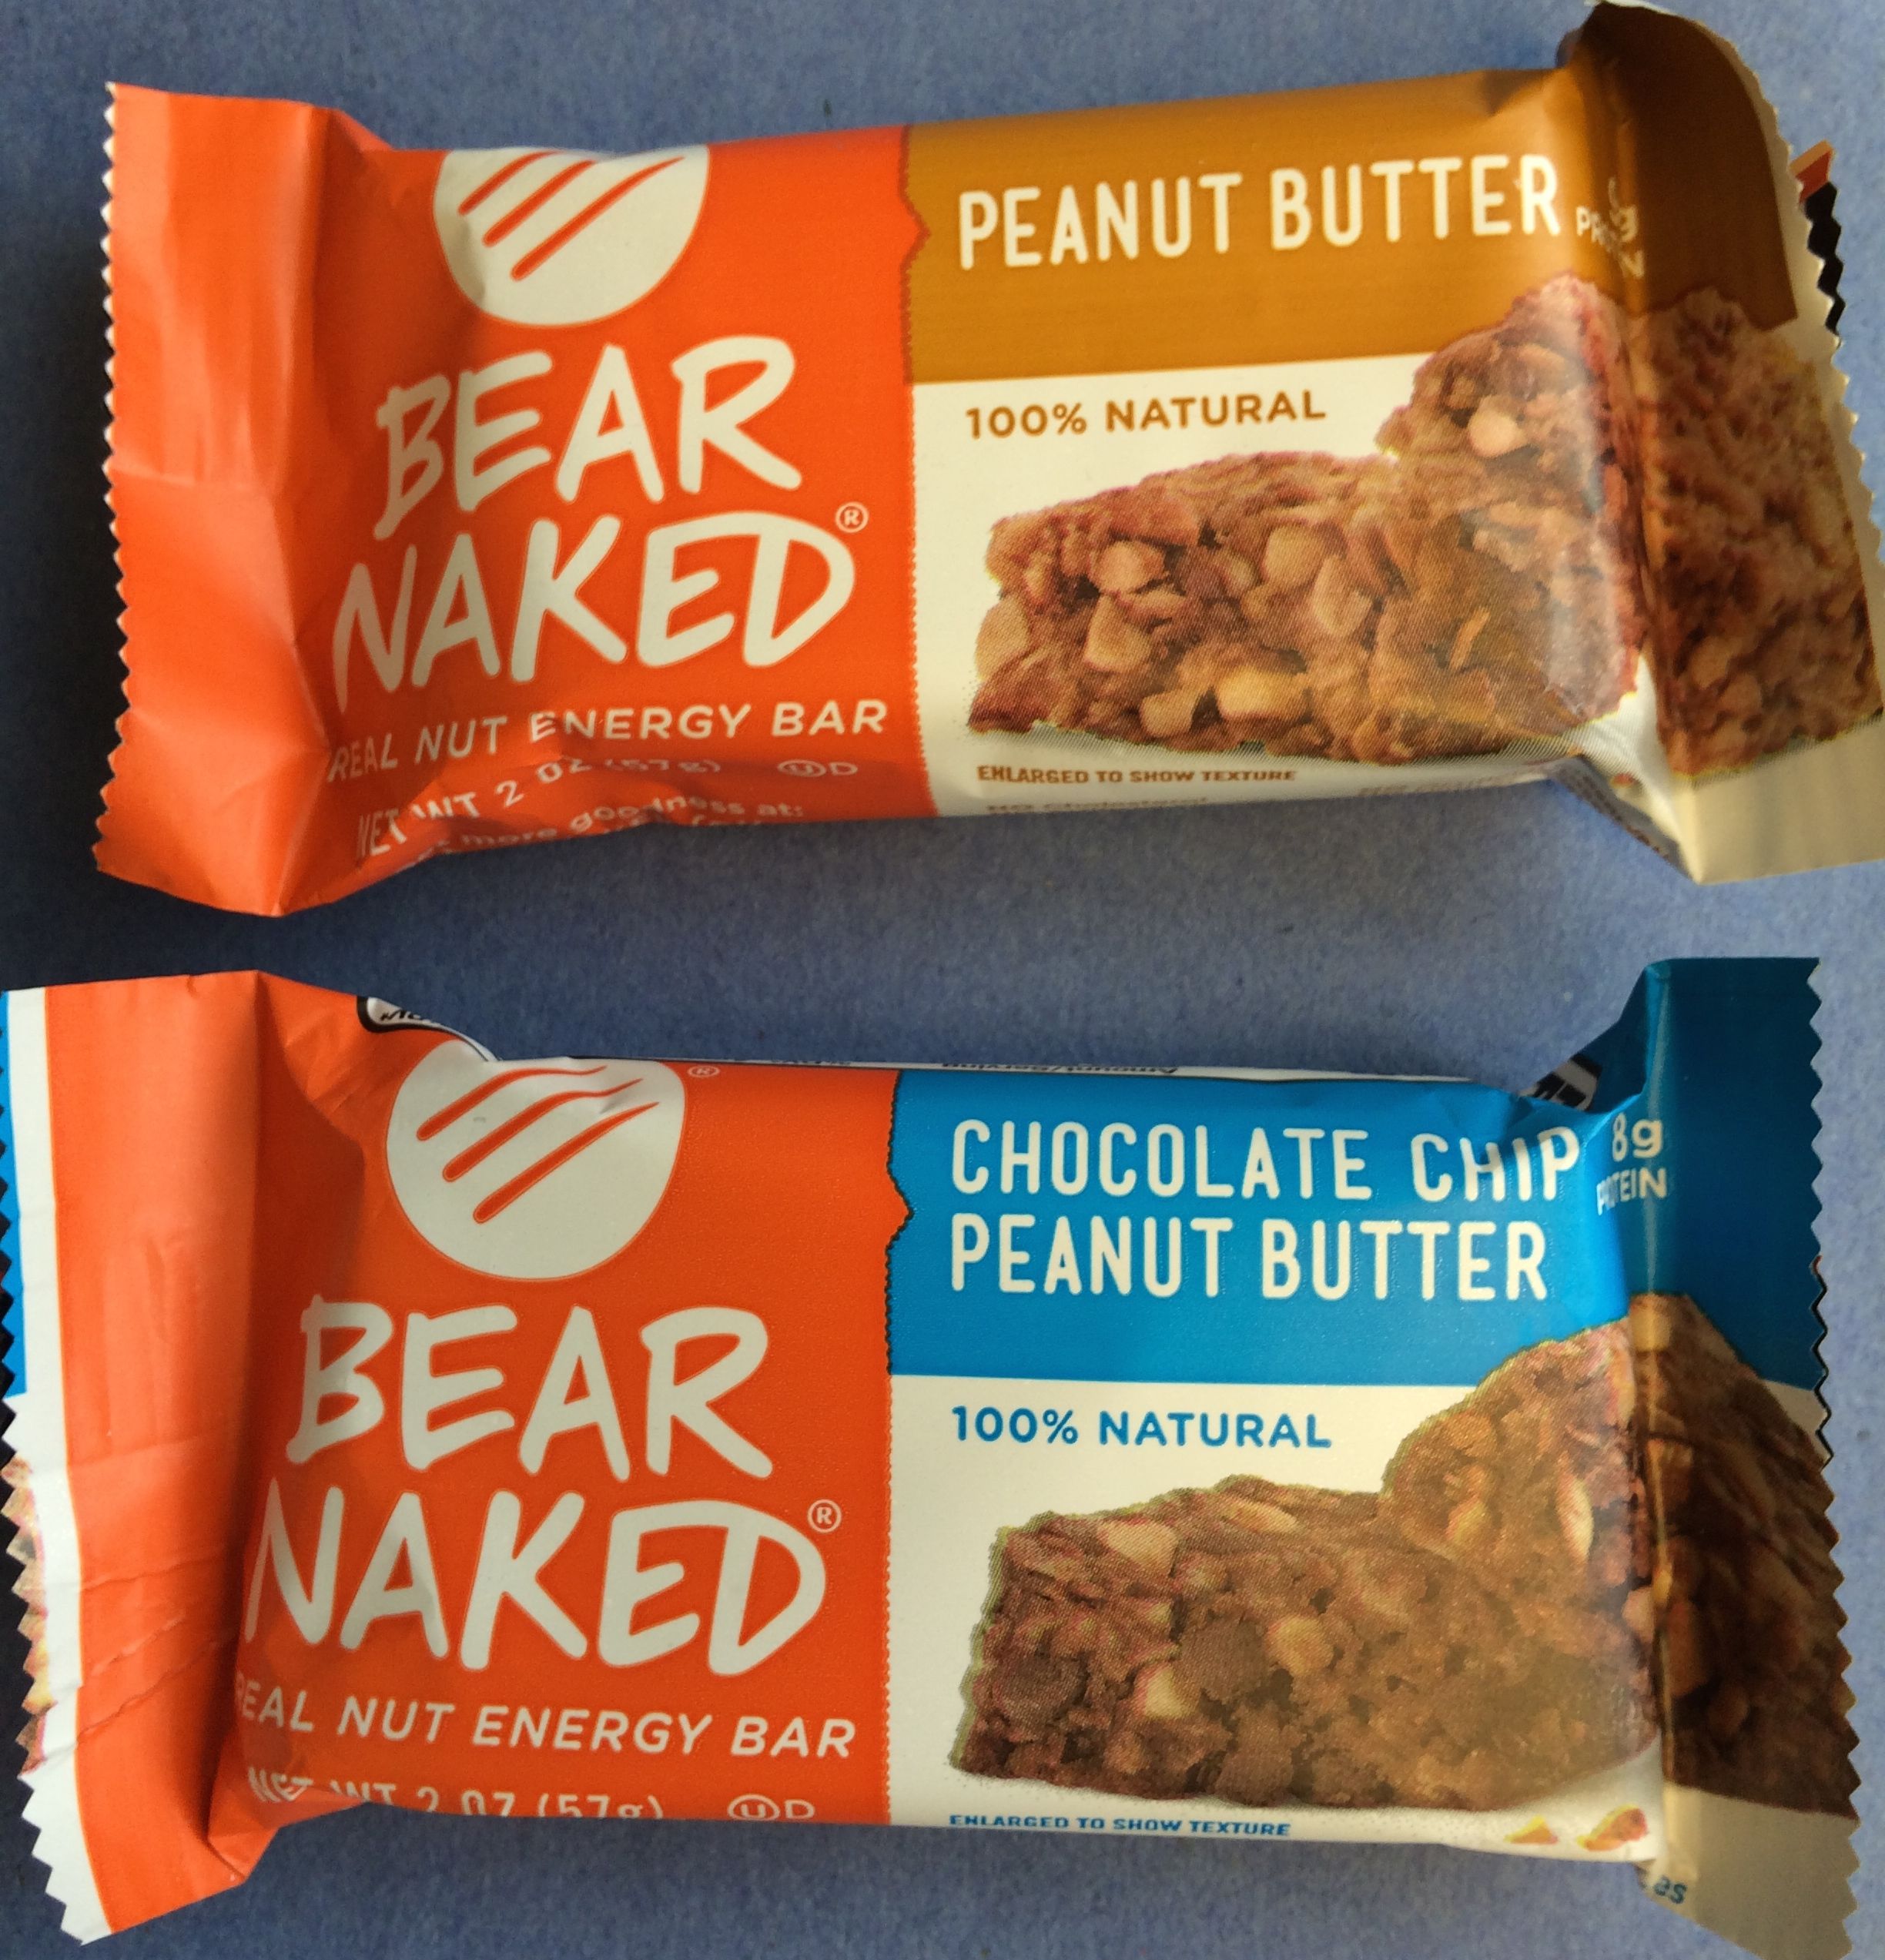 Bear naked snacks